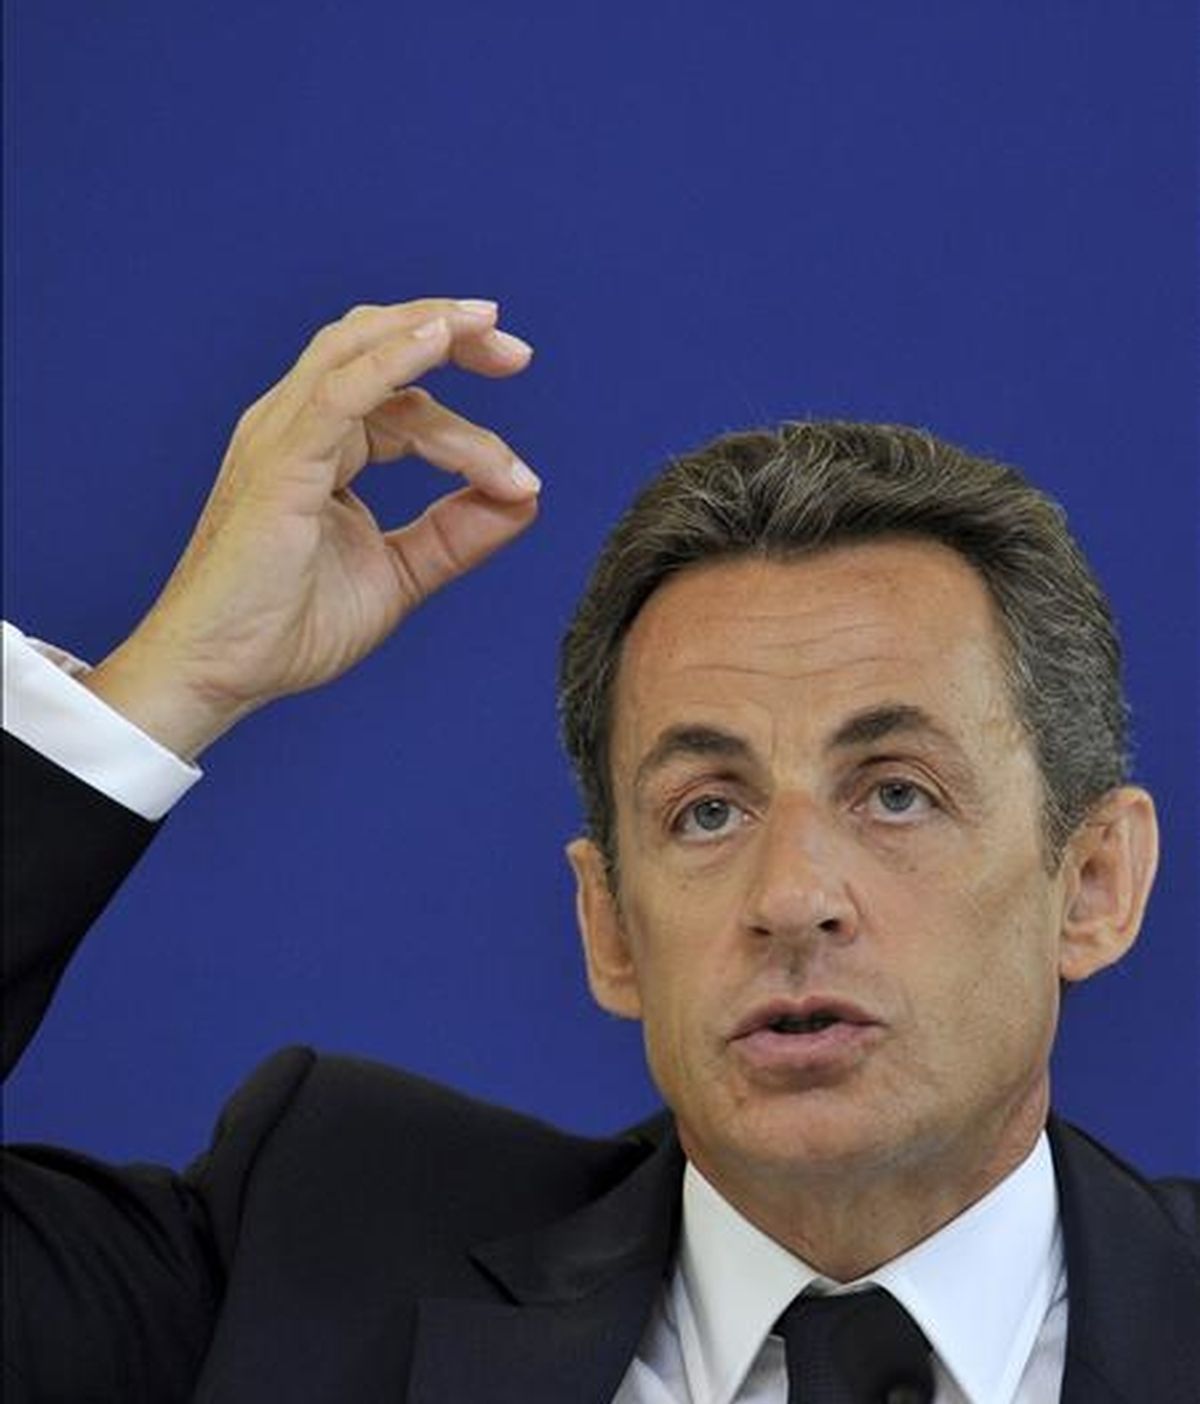 El presidente francés, Nicolas Sarkozy, comparecerá en la cadena de televisión pública "France 2" el próximo lunes para hablar de cuestiones de "actualidad", entre las que sin duda se incluirá el escándalo protagonizado por la heredera de L'Oréal, Liliane Bettencourt. EFE/Archivo